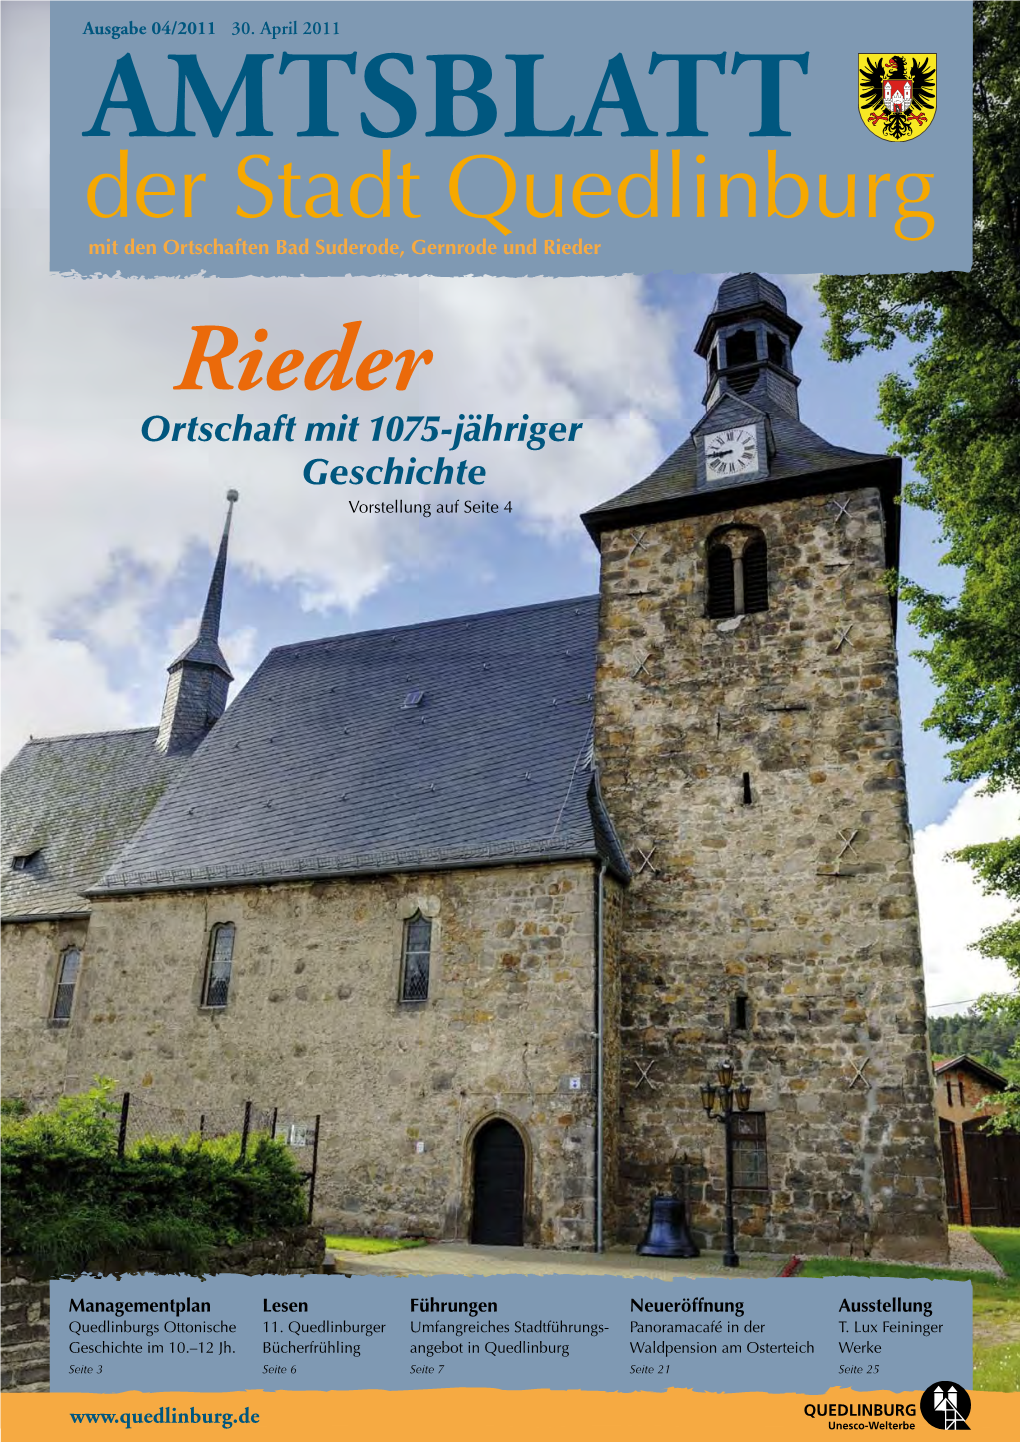 Rieder Rieder Ortschaft Mit 1075-Jähriger Geschichte Vorstellung Auf Seite 4